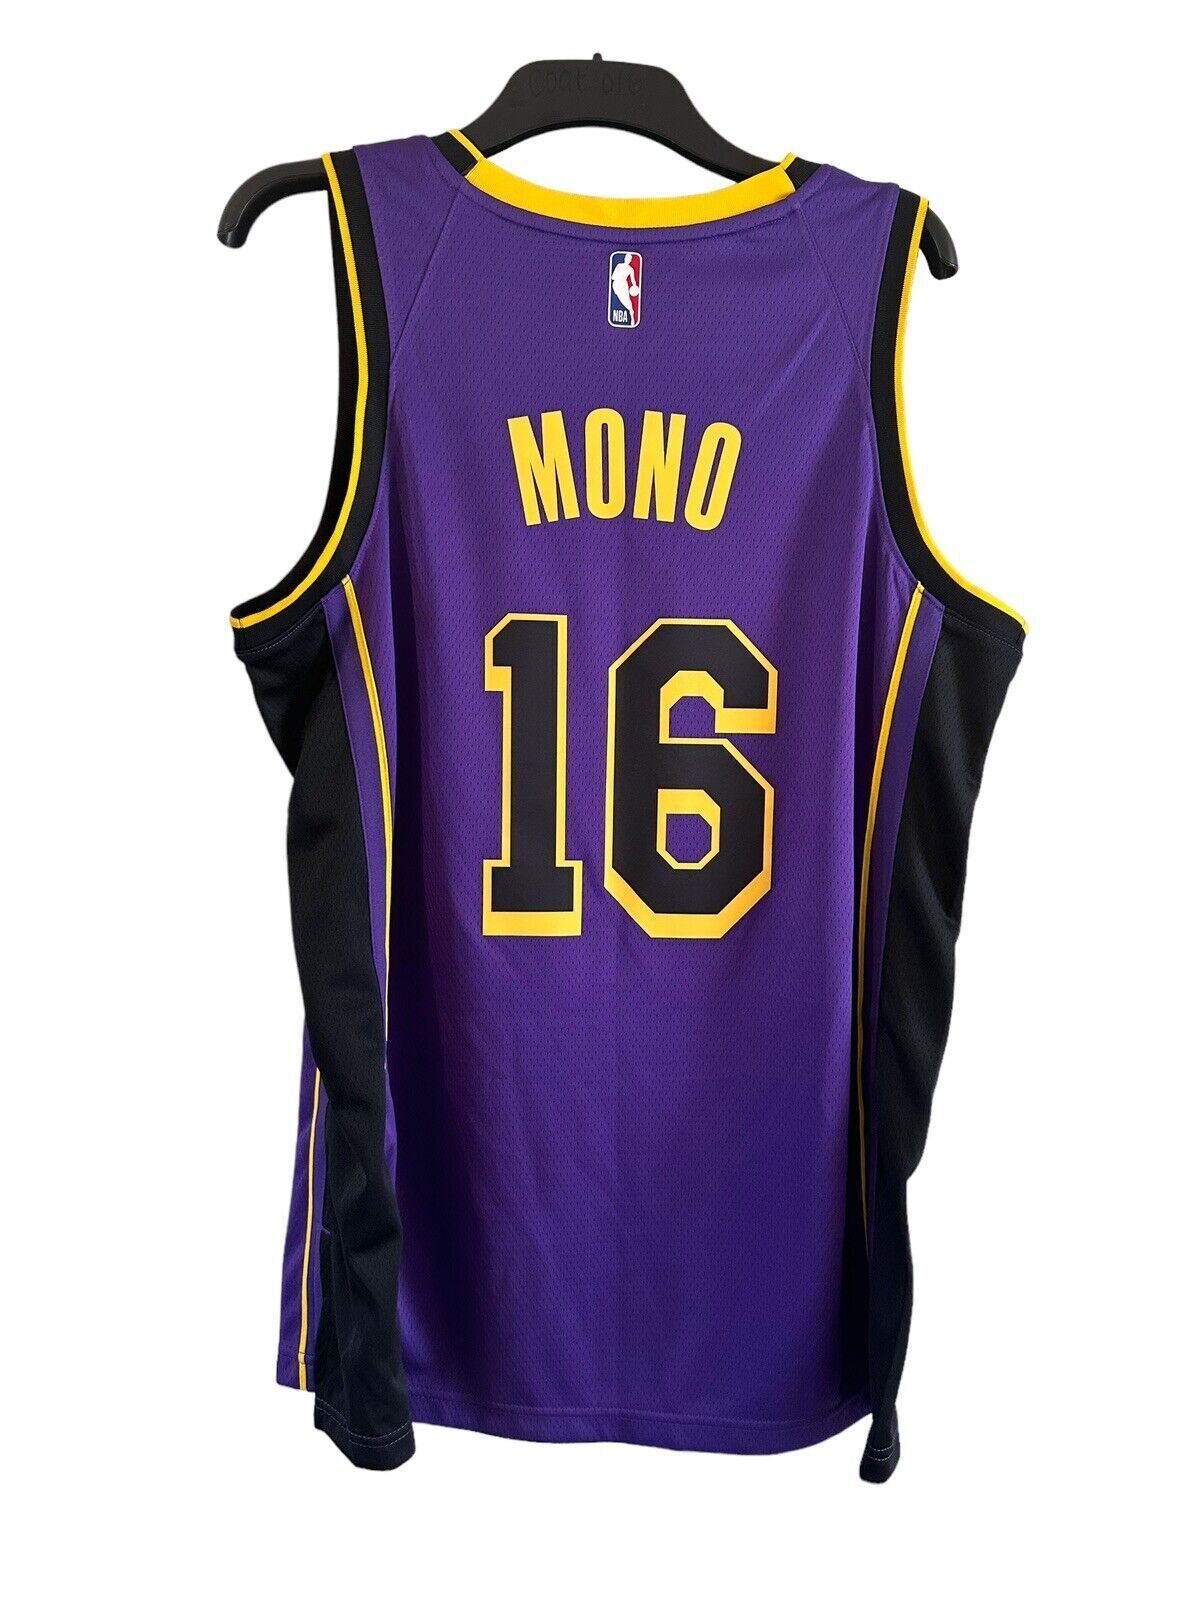 Nike Jordan NBA LA Lakers Statement Edition Jersey MONO 16 Men’s Large *DF*